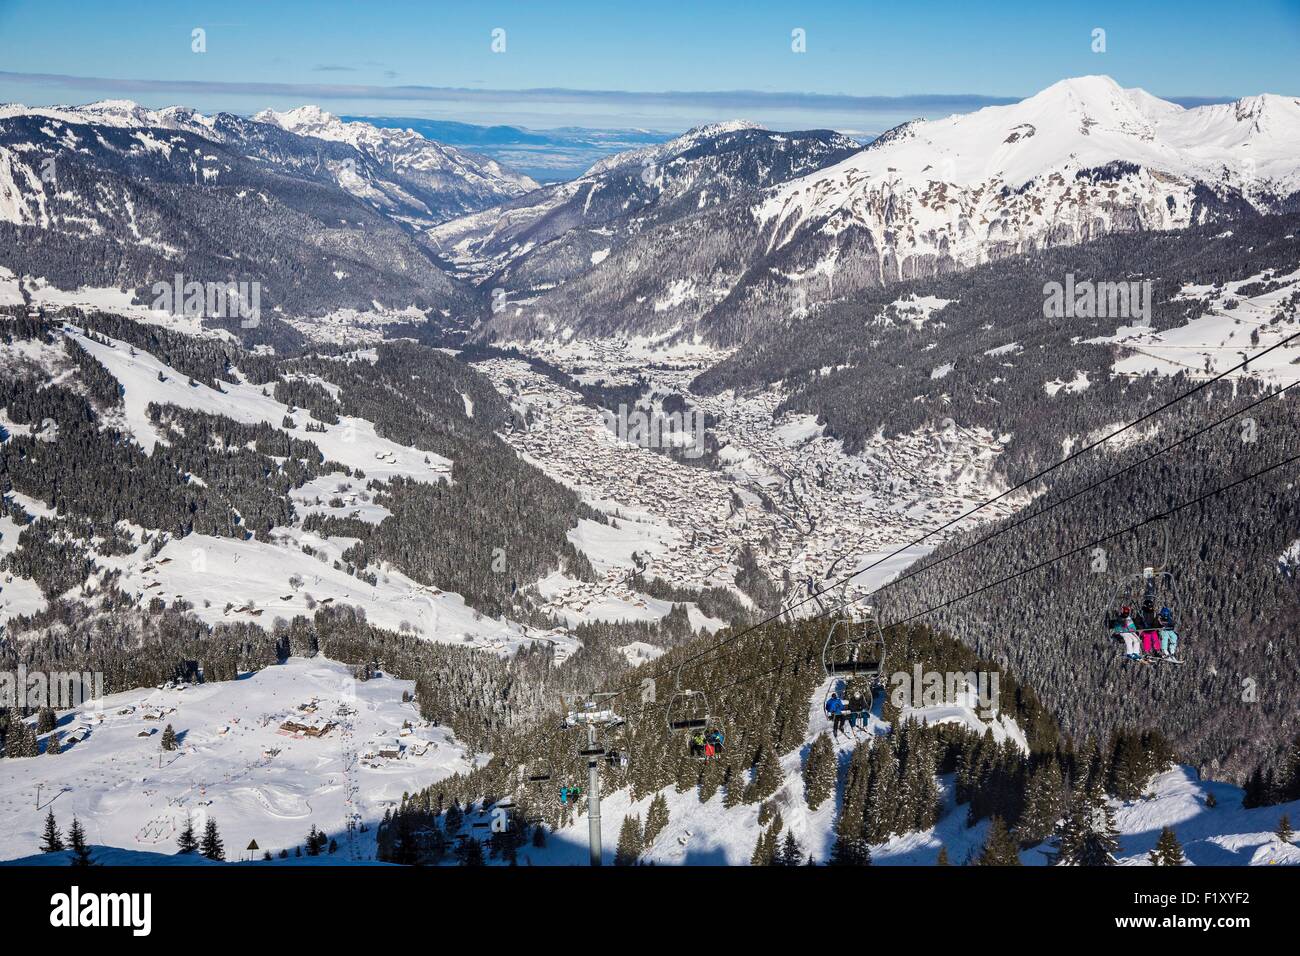 Francia, Haute Savoie, Morzine, La valle di Aulps, Chablais, piste da sci delle Portes du Soleil, vista sul lago Leman e giura a fondo poiché la Pointe de Nyon Foto Stock